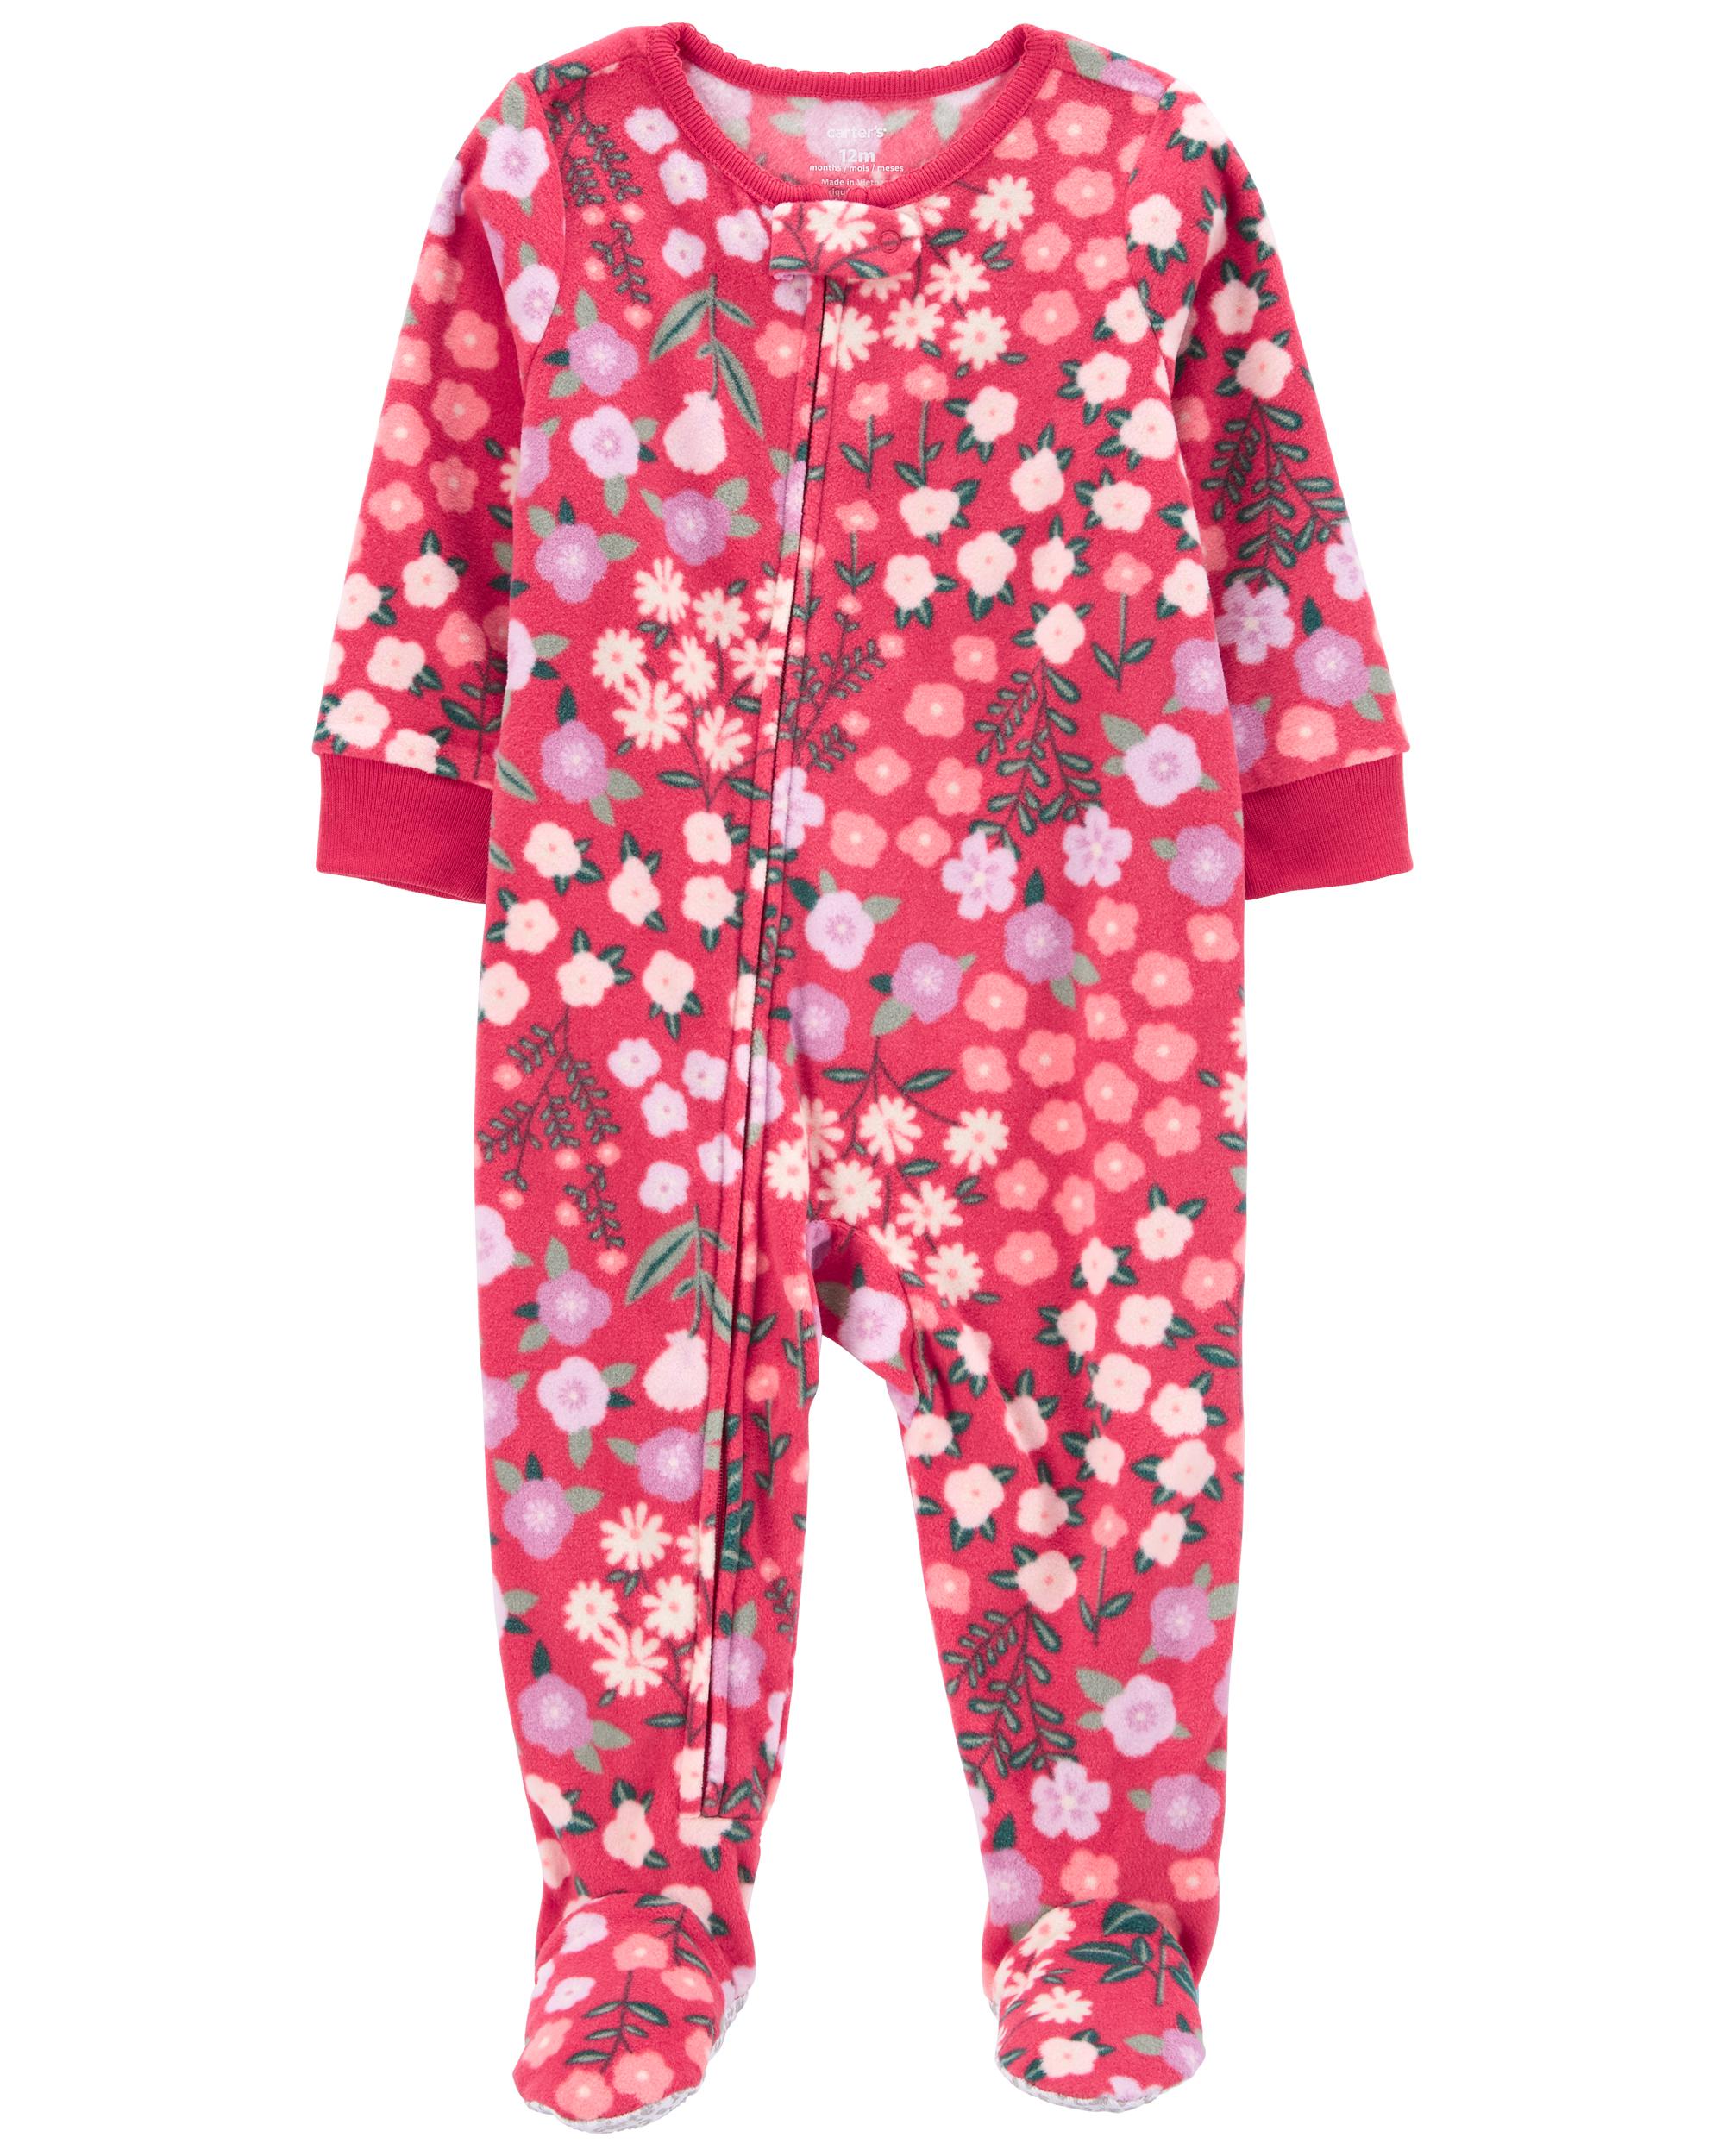 Toddler 1-Piece Fleece Foot Pyjamas